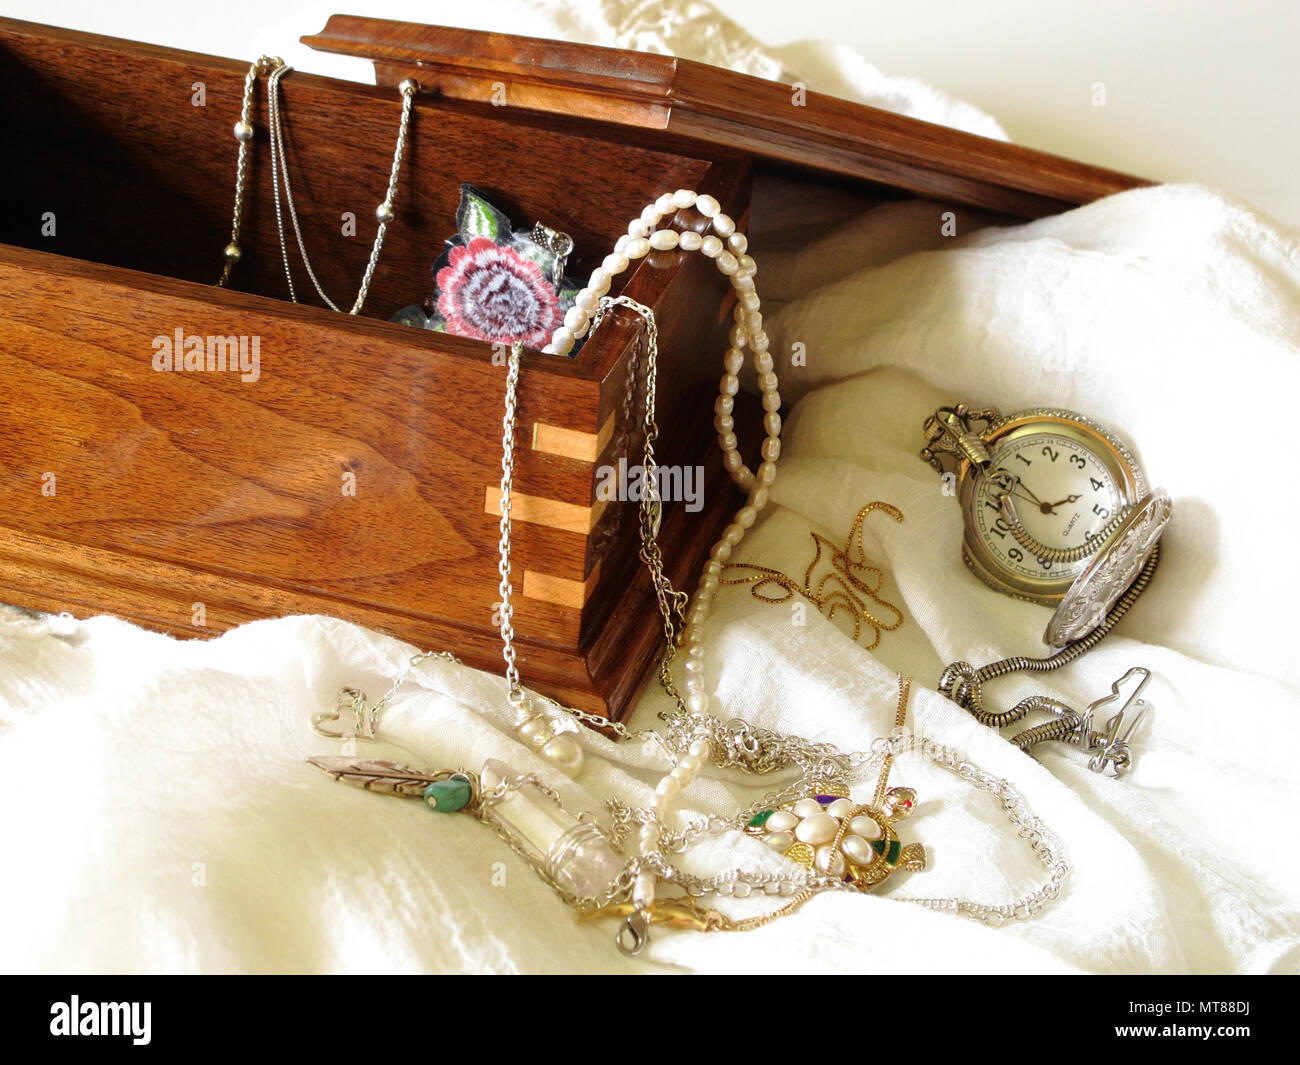 Dans la boîte de bijoux, argent, or et perles d'eau douce, d'héritage intemporel Banque D'Images